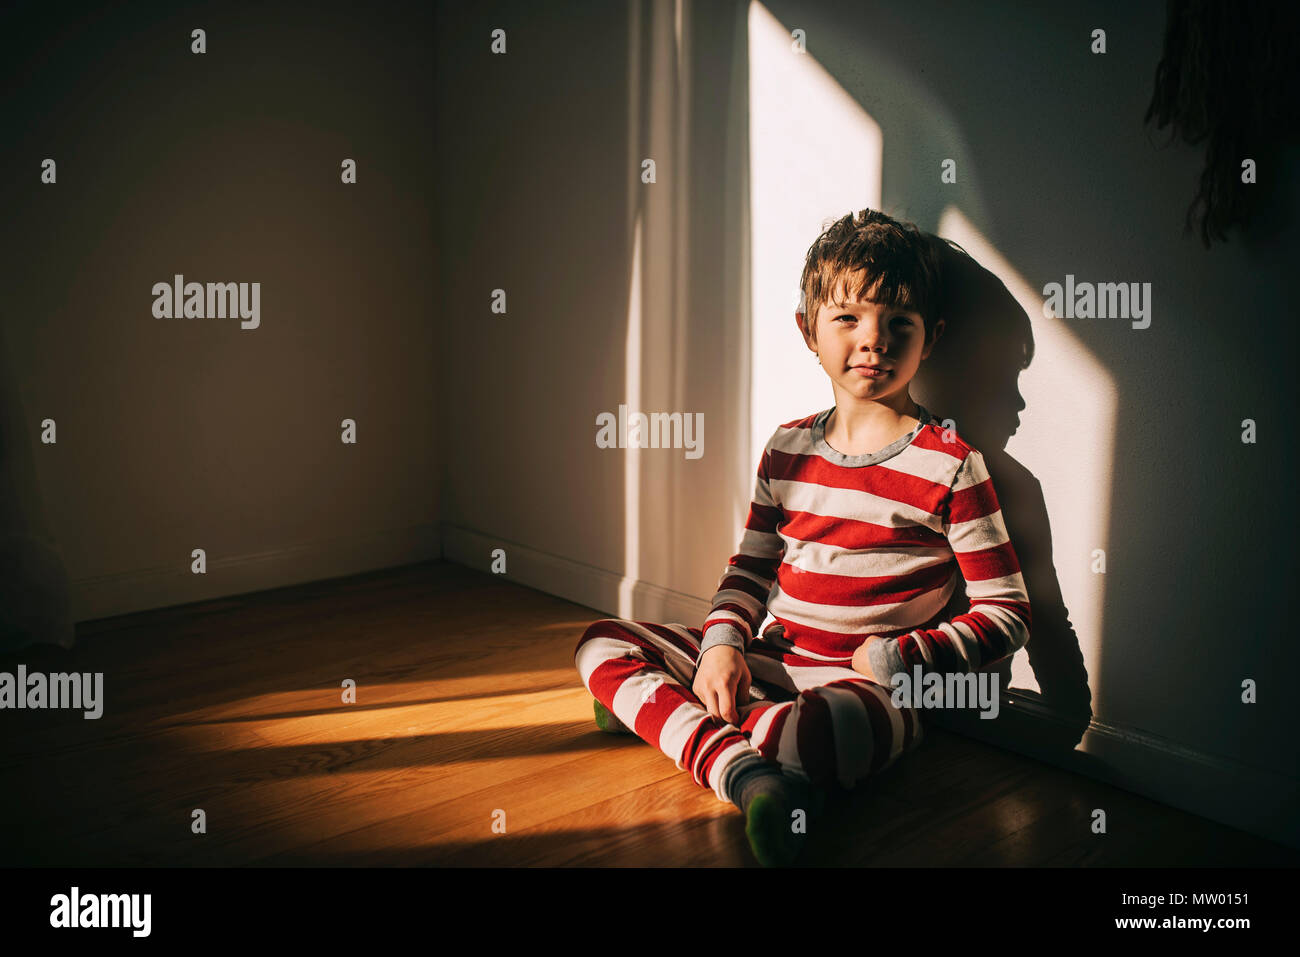 Junge sitzt auf dem Boden lehnte sich gegen eine Wand. Stockfoto